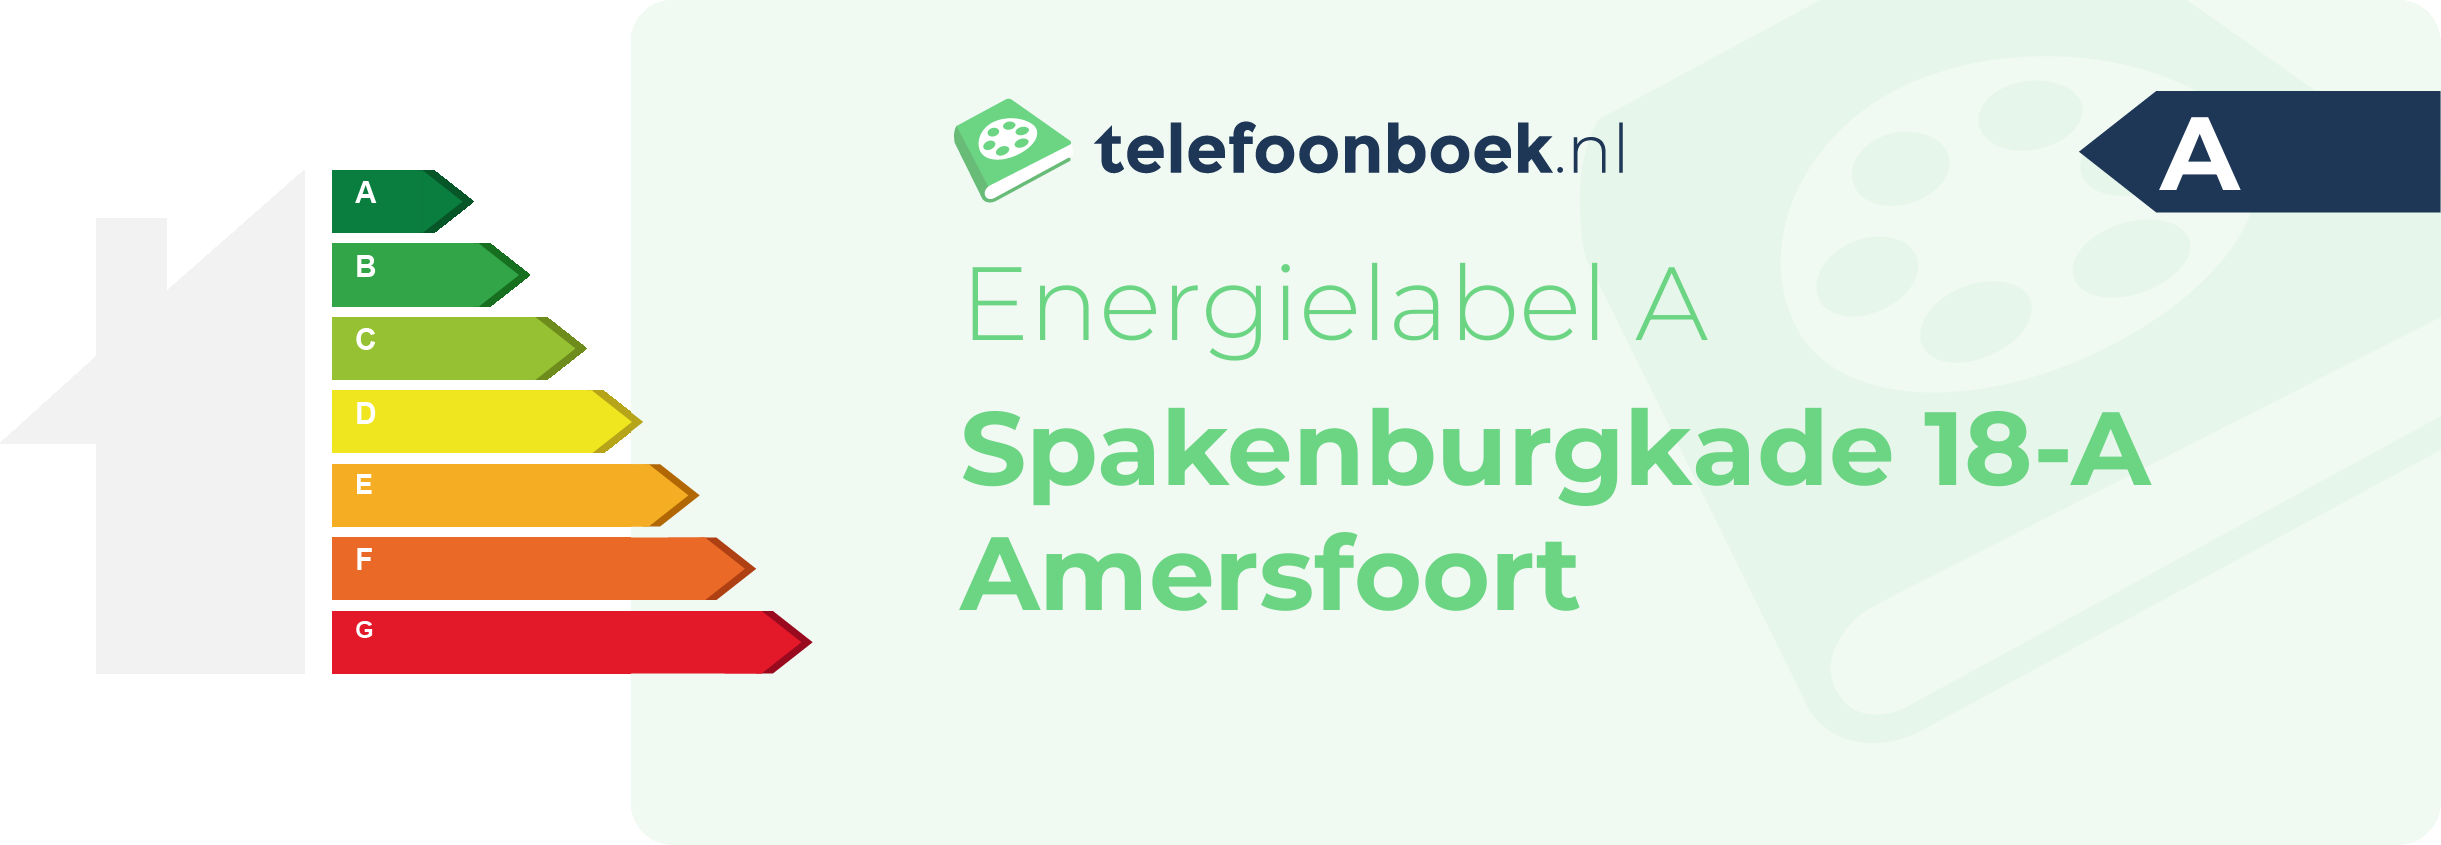 Energielabel Spakenburgkade 18-A Amersfoort